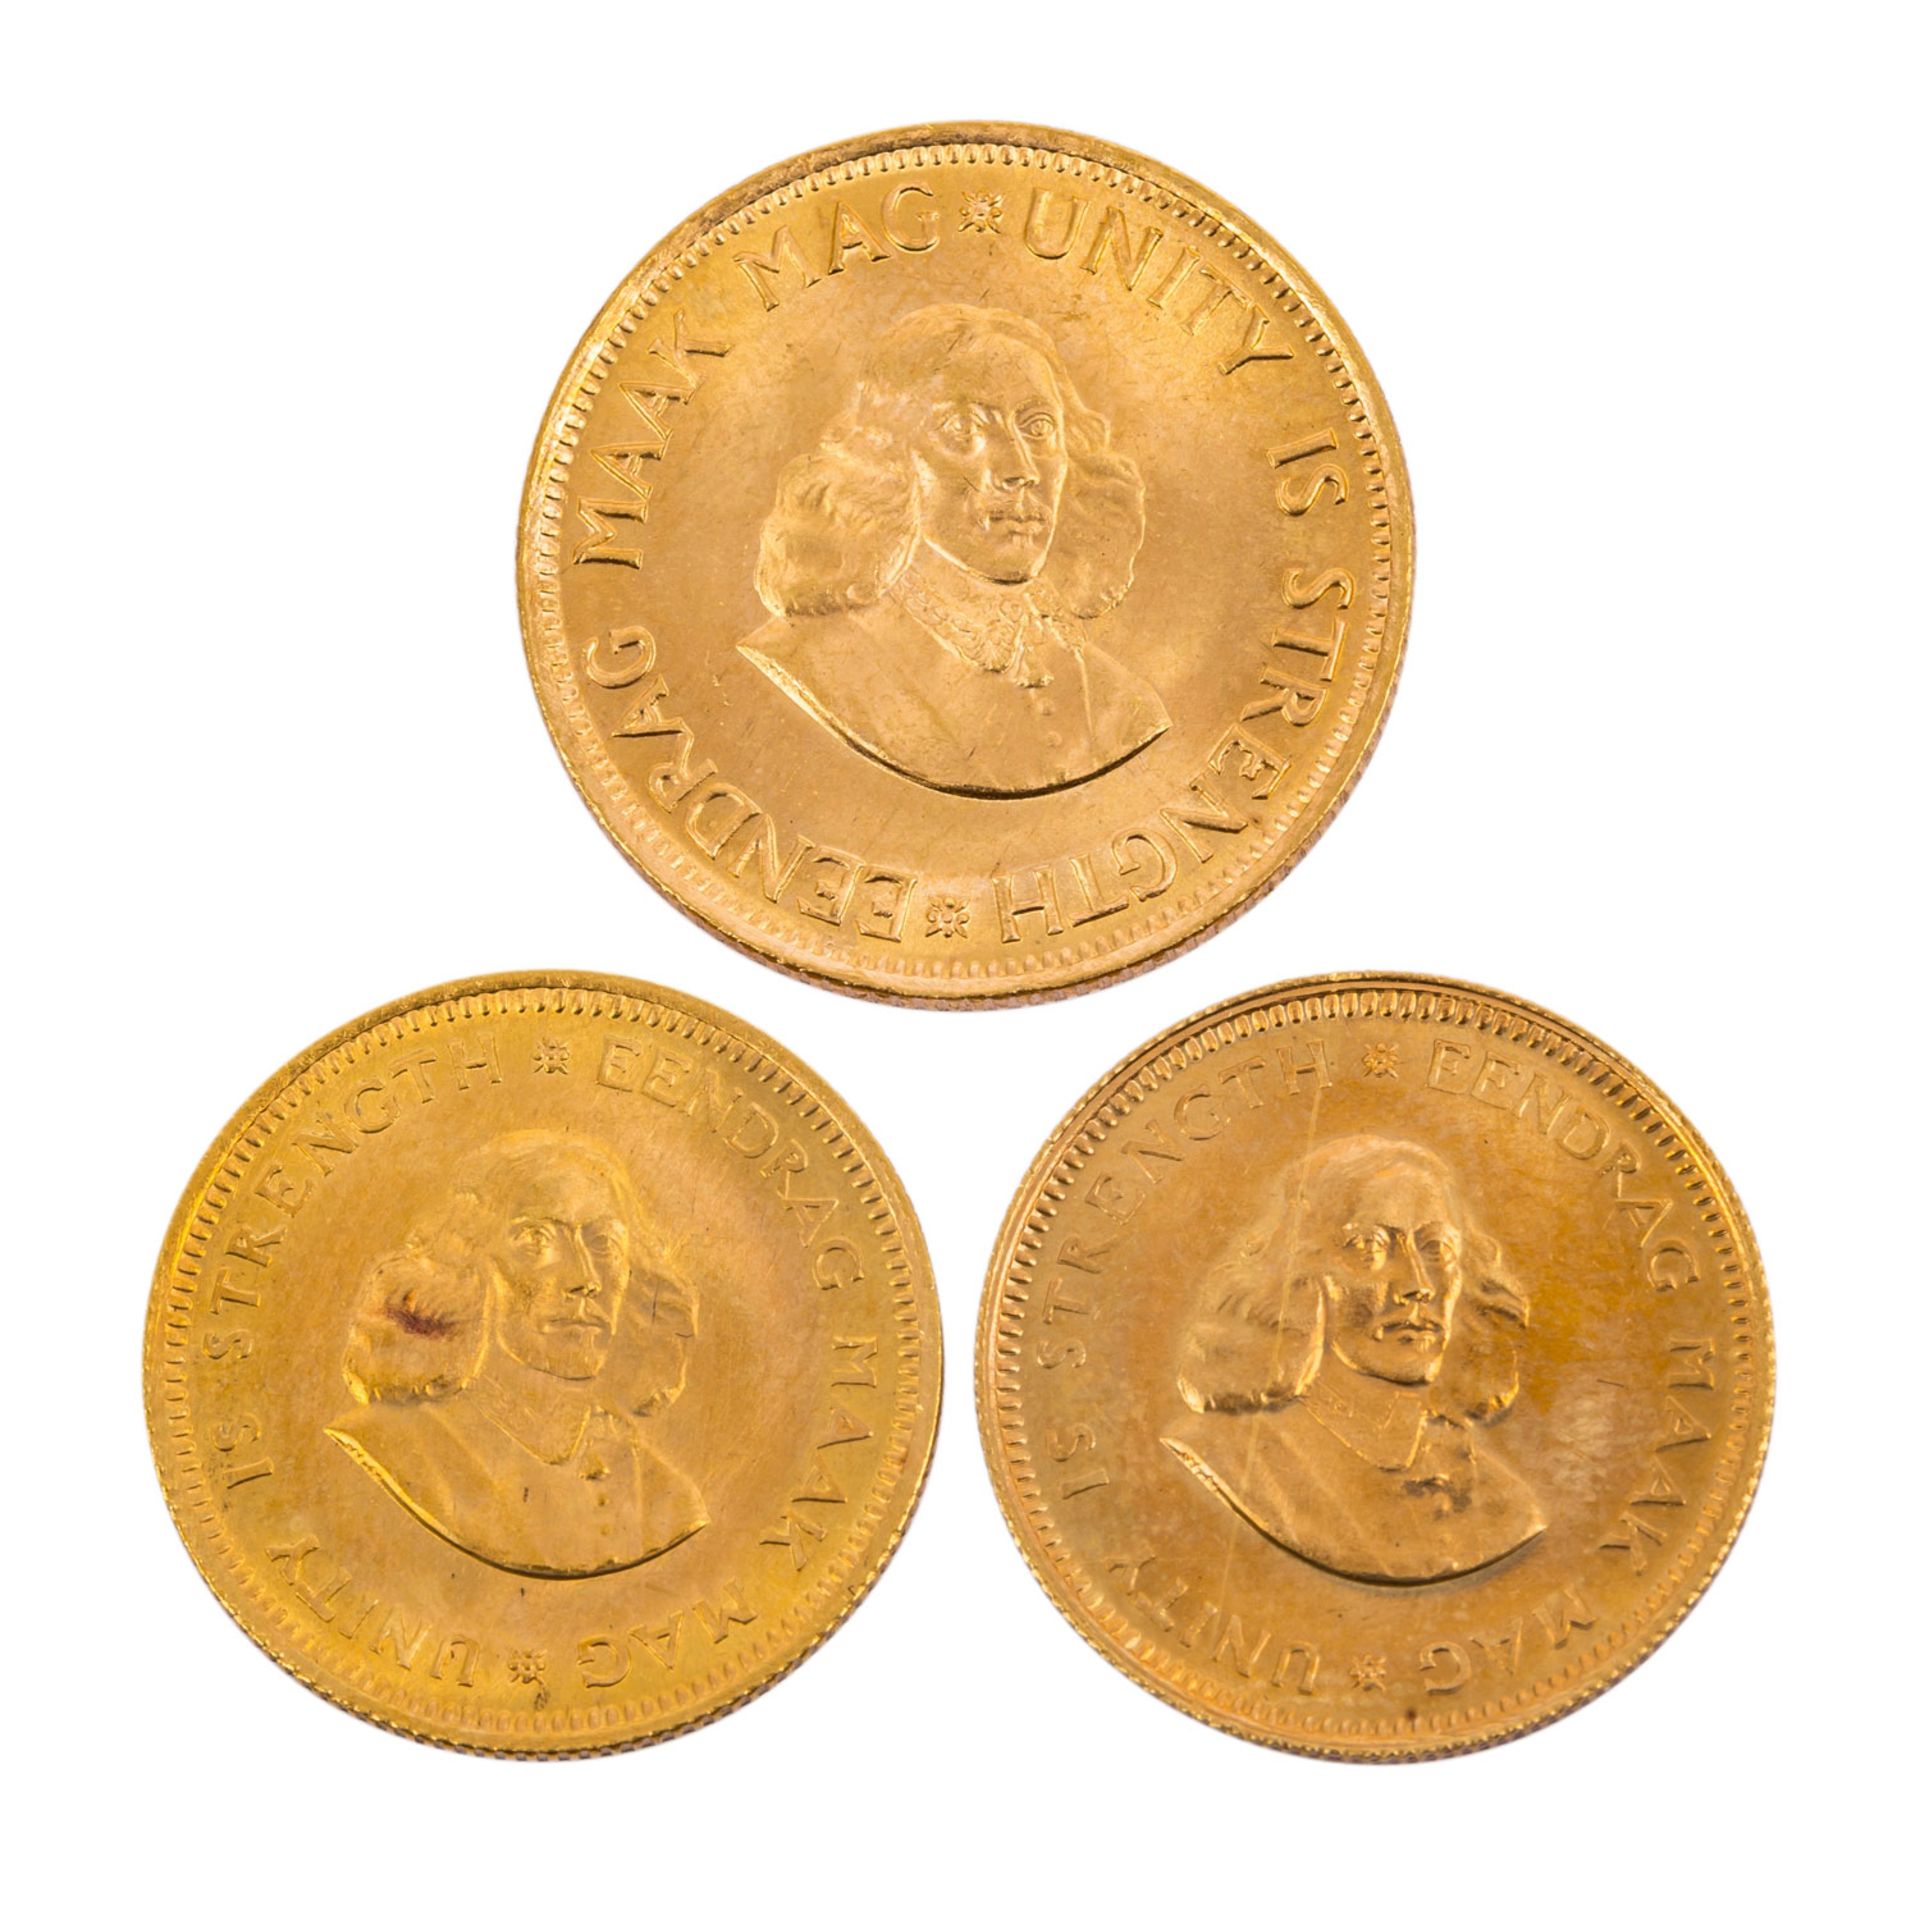 Kleines Goldlot Südafrikainsgesamt Feingewicht ca. 16g, besteht aus 2x 1 Rand 1967 un